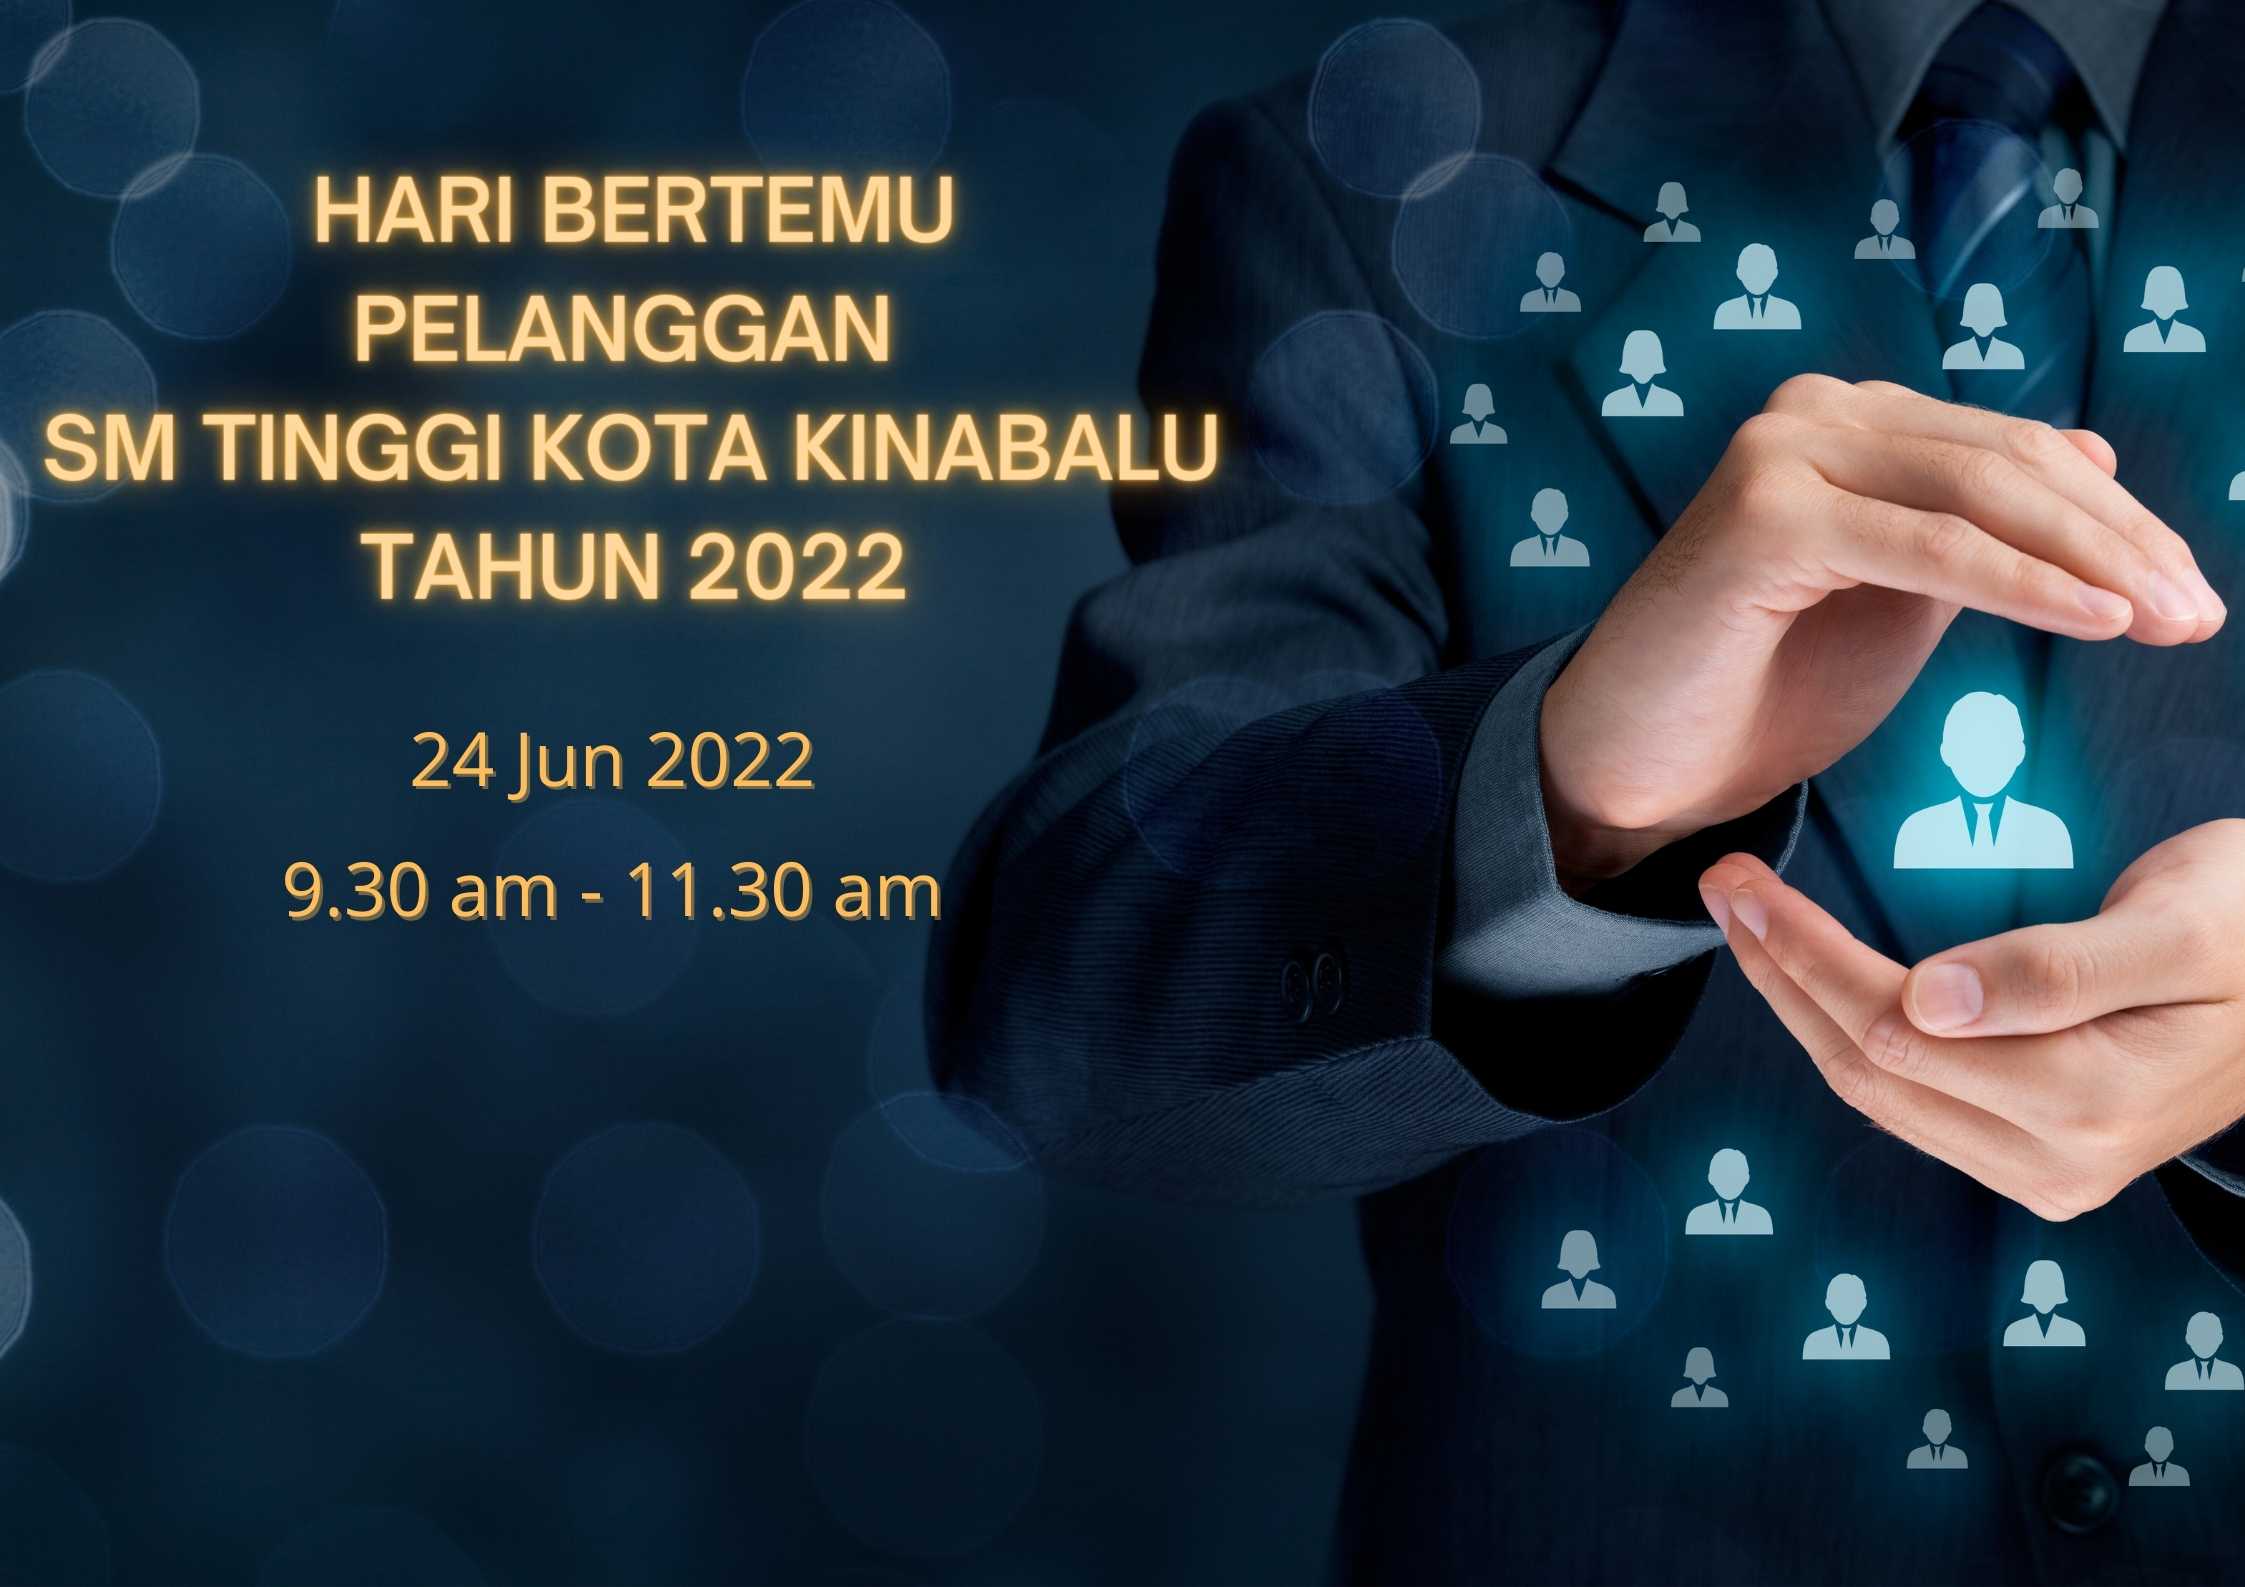 Hari Bertemu Pelanggan SM Tinggi Kota Kinabalu Tahun 2022